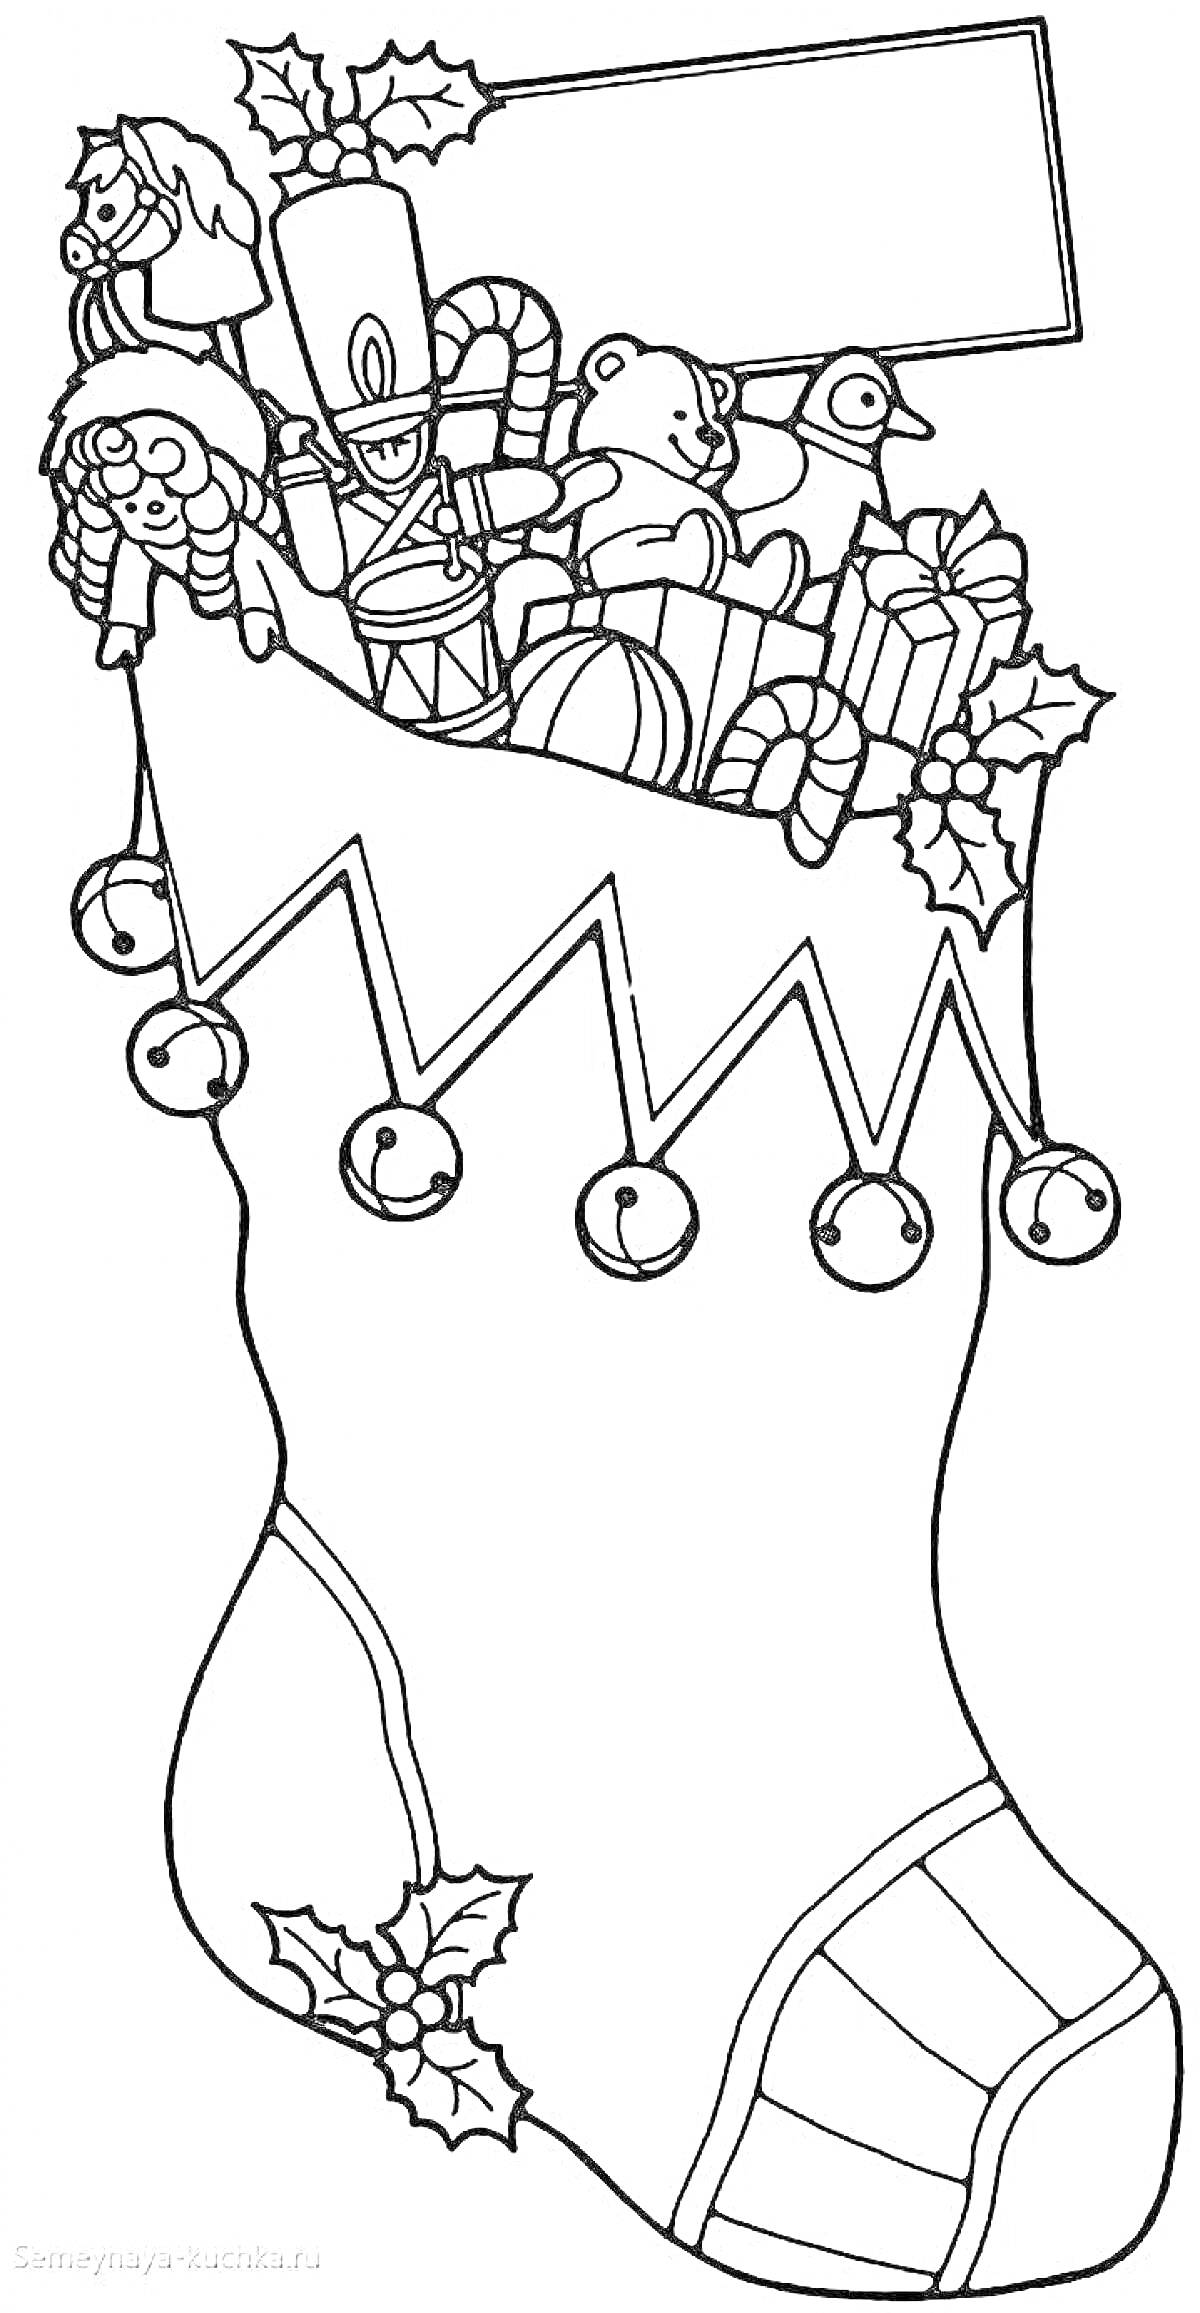 Раскраска Рождественский сапожок с игрушками, орехоколом, мишкой, уточкой, леденцом в форме трости, подарками и листьями падуба с ягодами